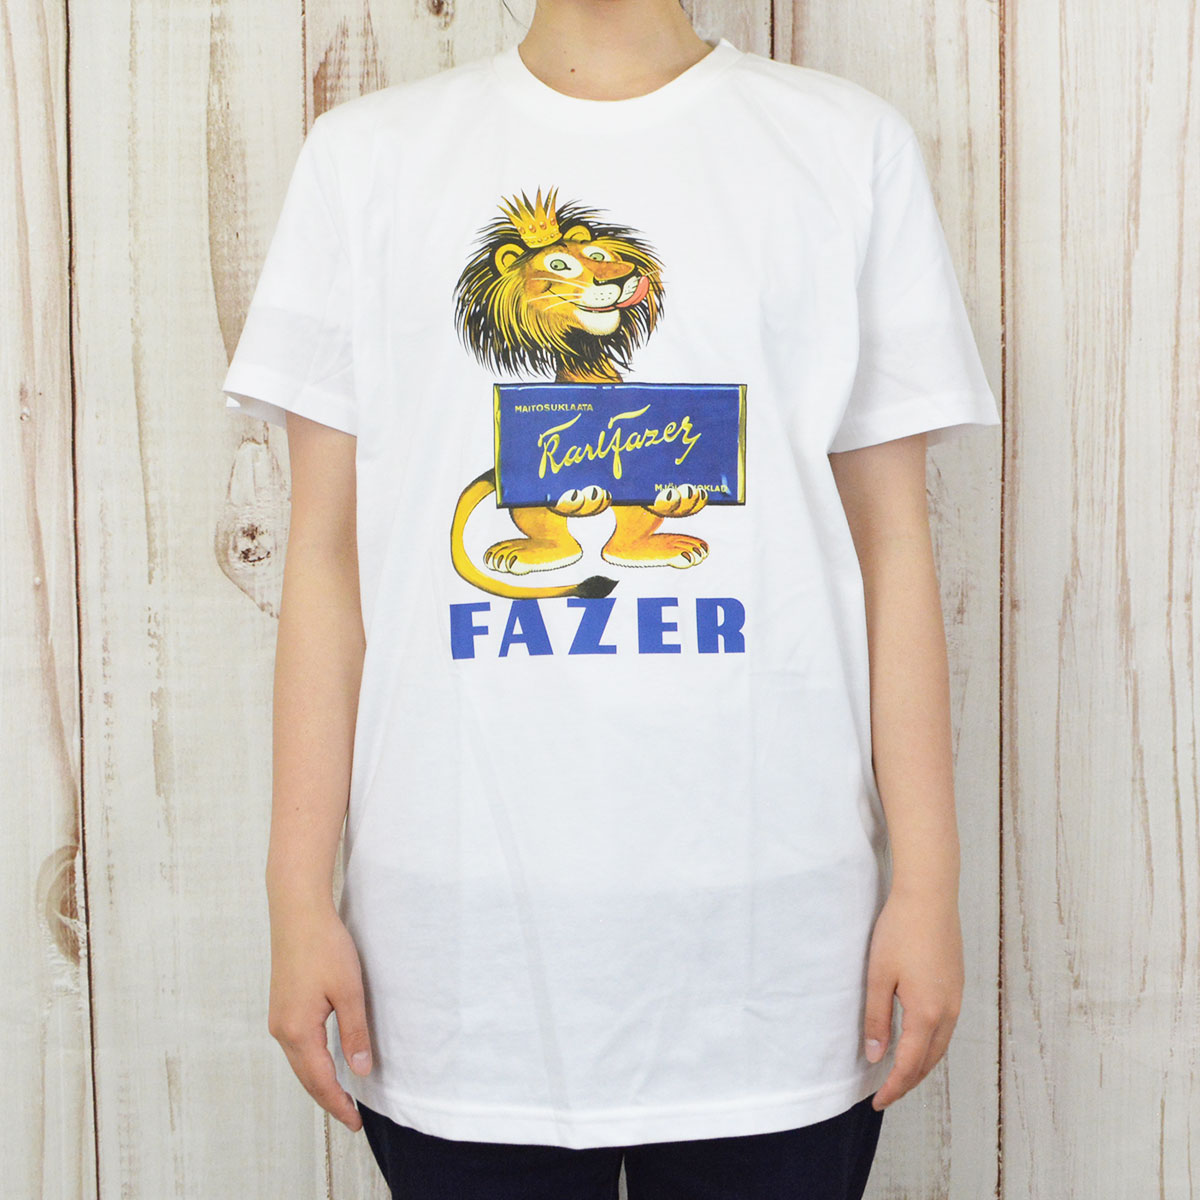 Fazer ファッツェル KarlFazer ライオン Tシャツ ( Lサイズ )